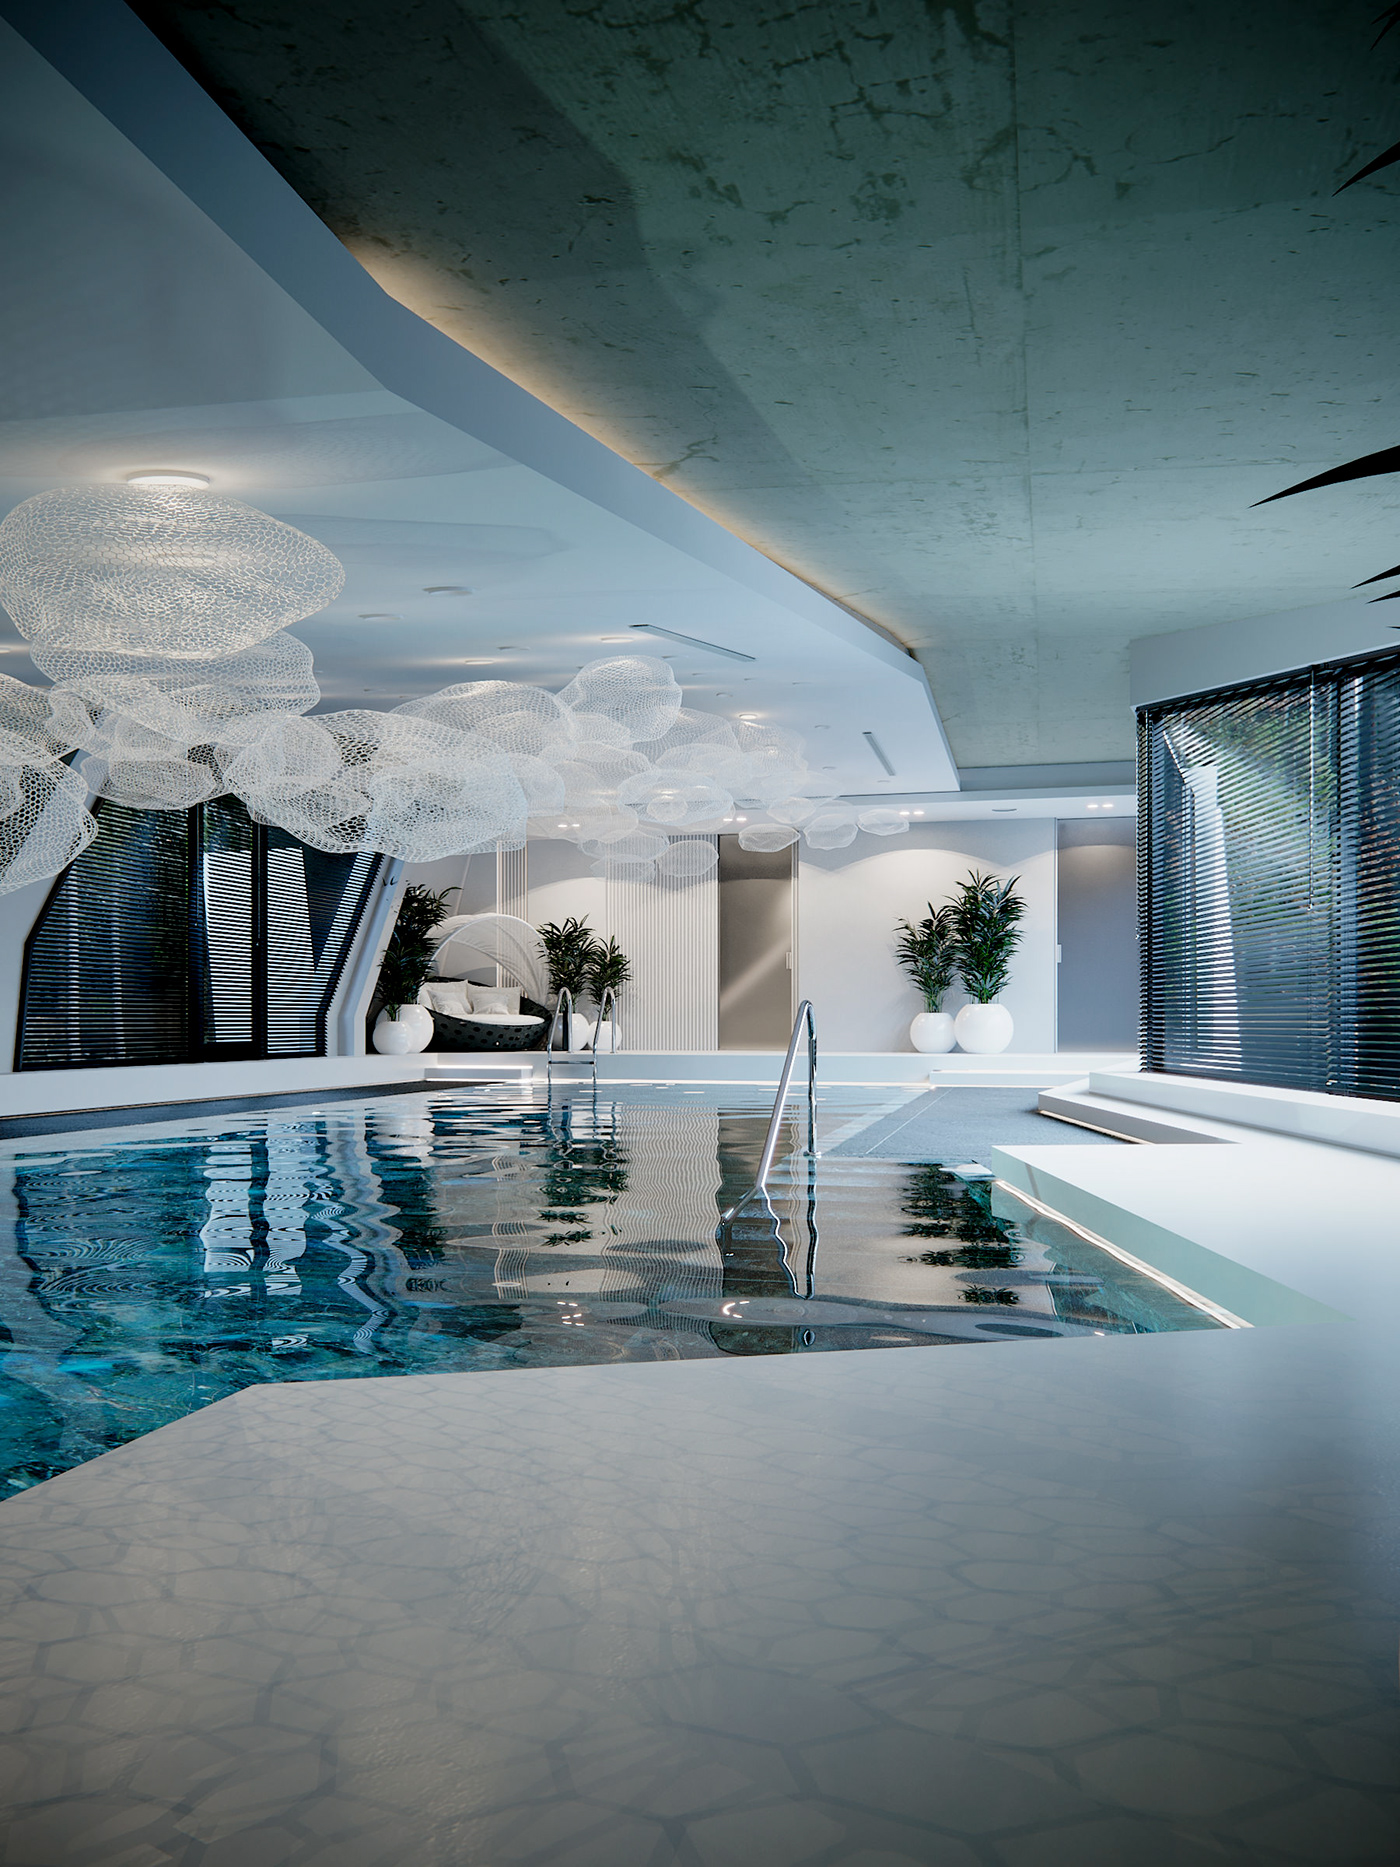 design дизайн интерьера бассейн бильярдная архитектура дизйн дома дом интерьер пространство предметный дизайн